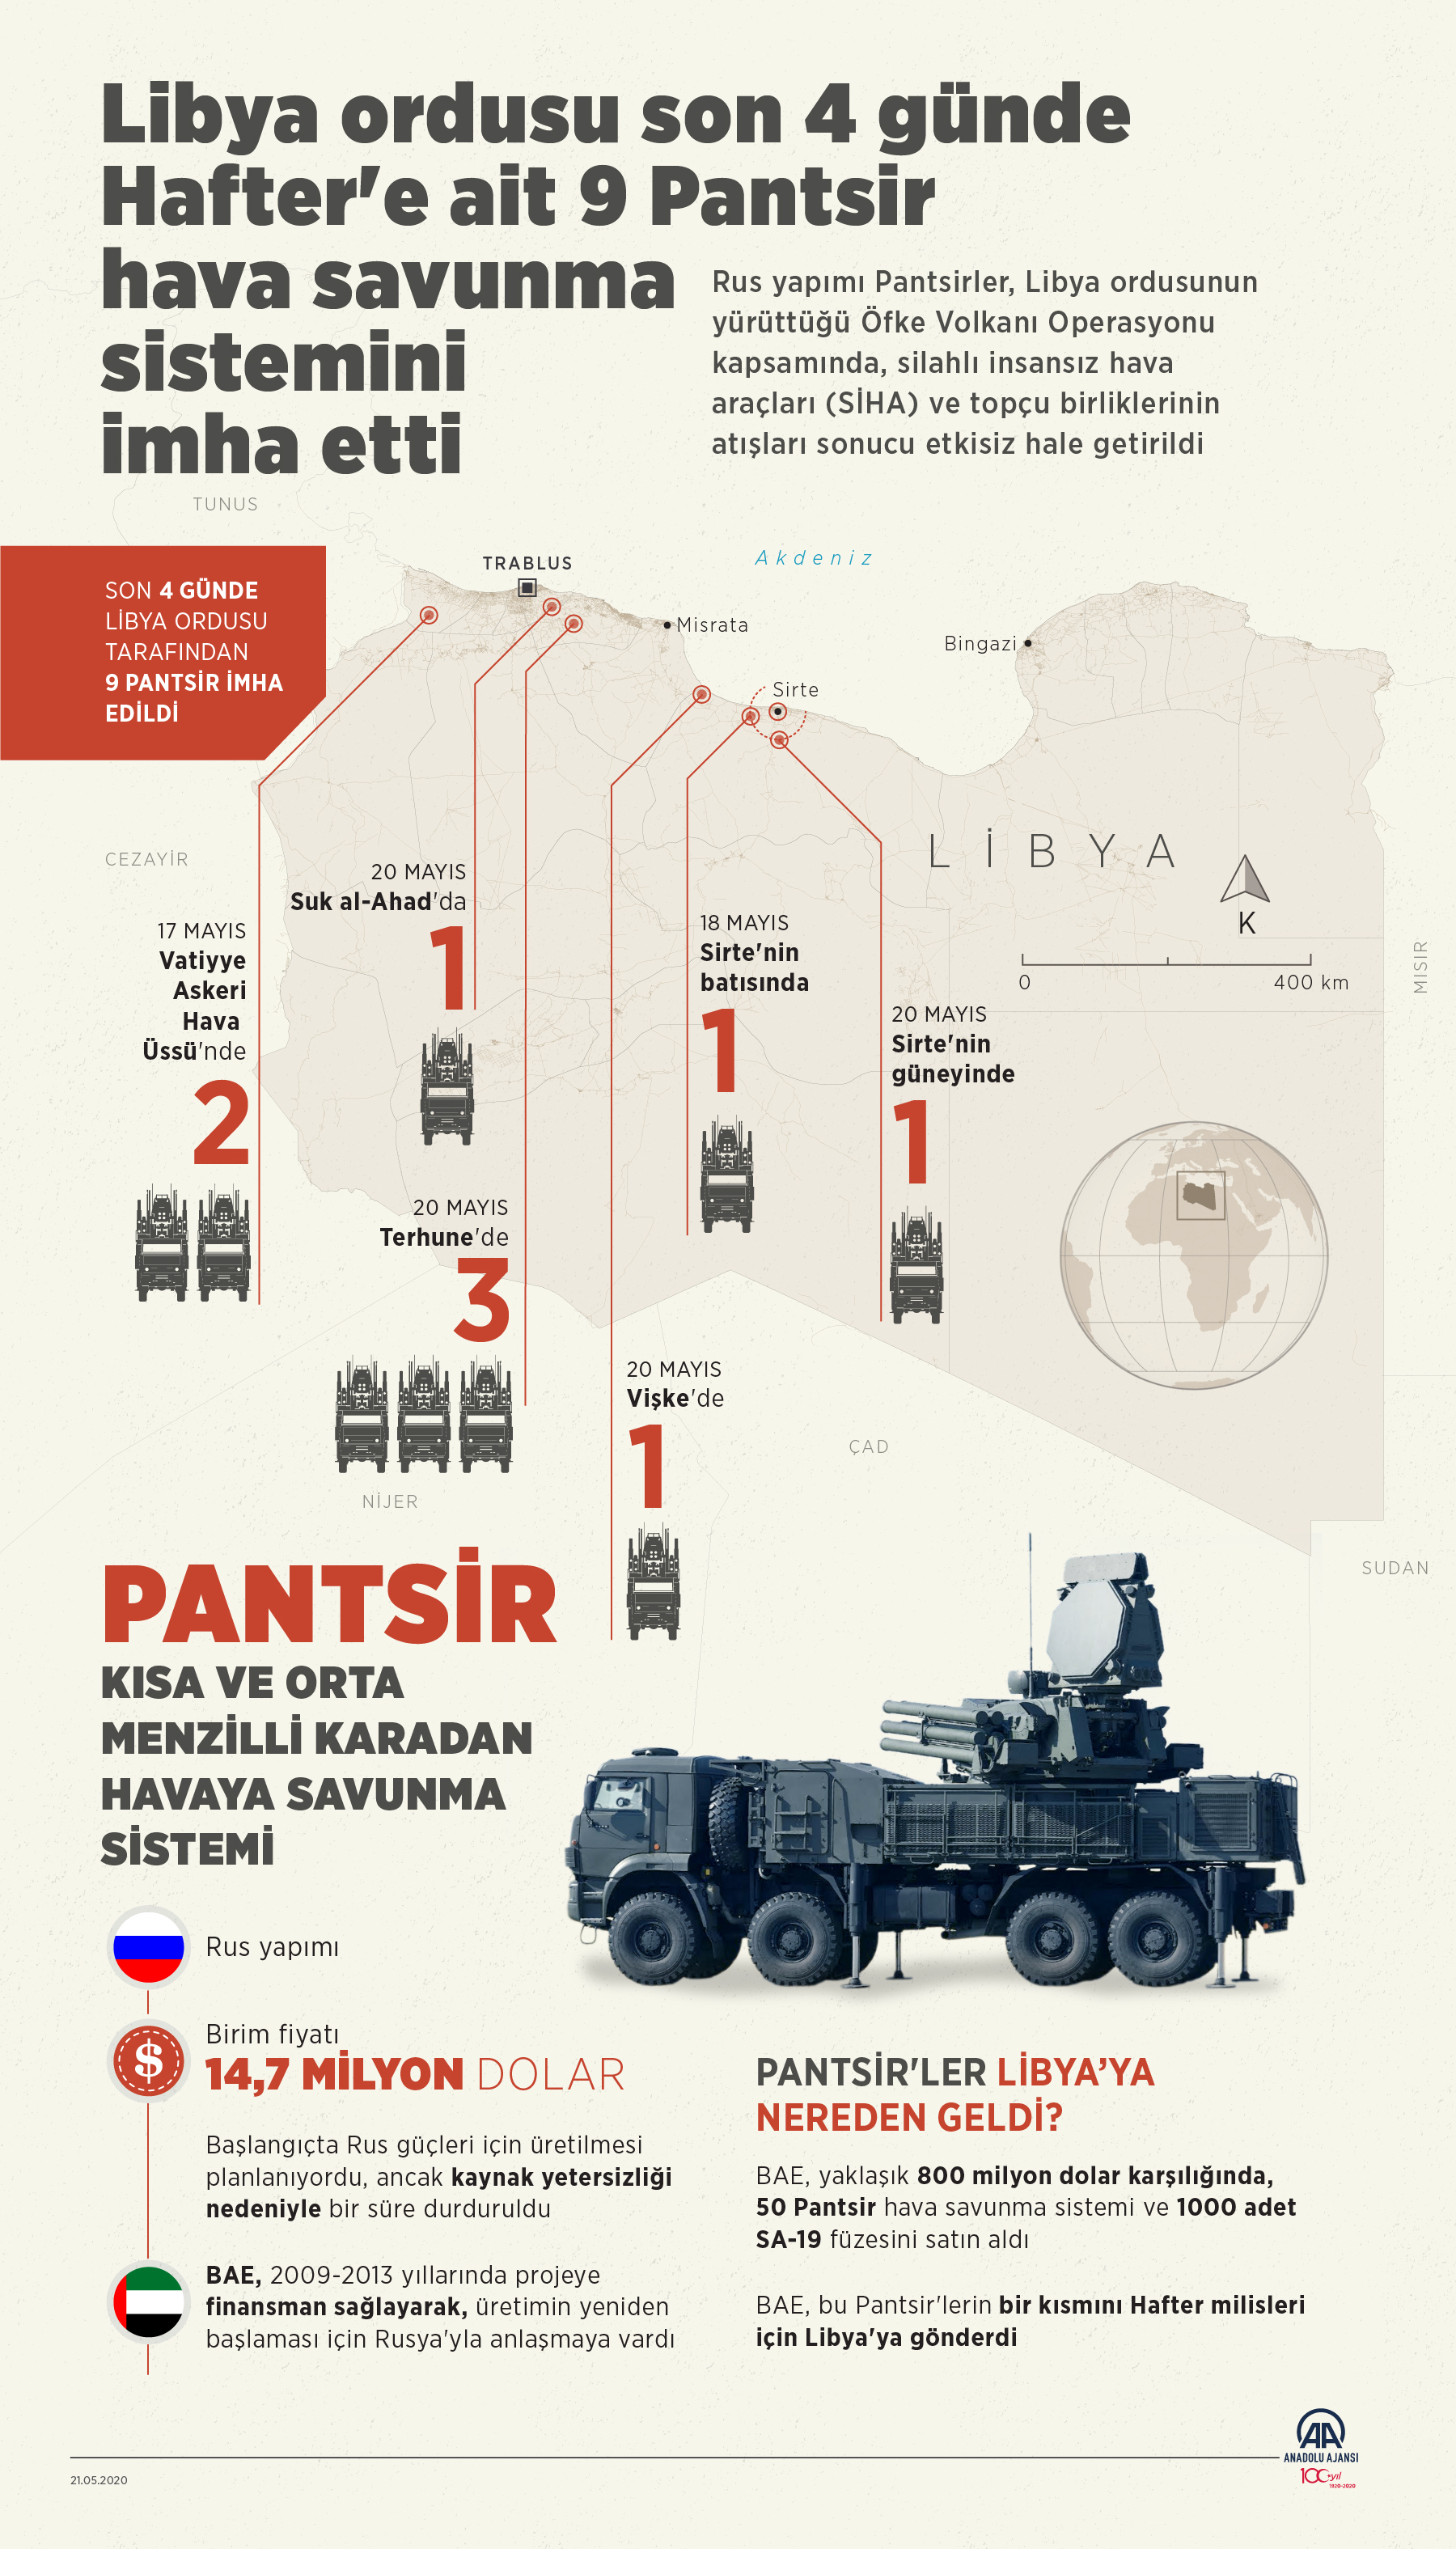 Libya ordusu imhaları